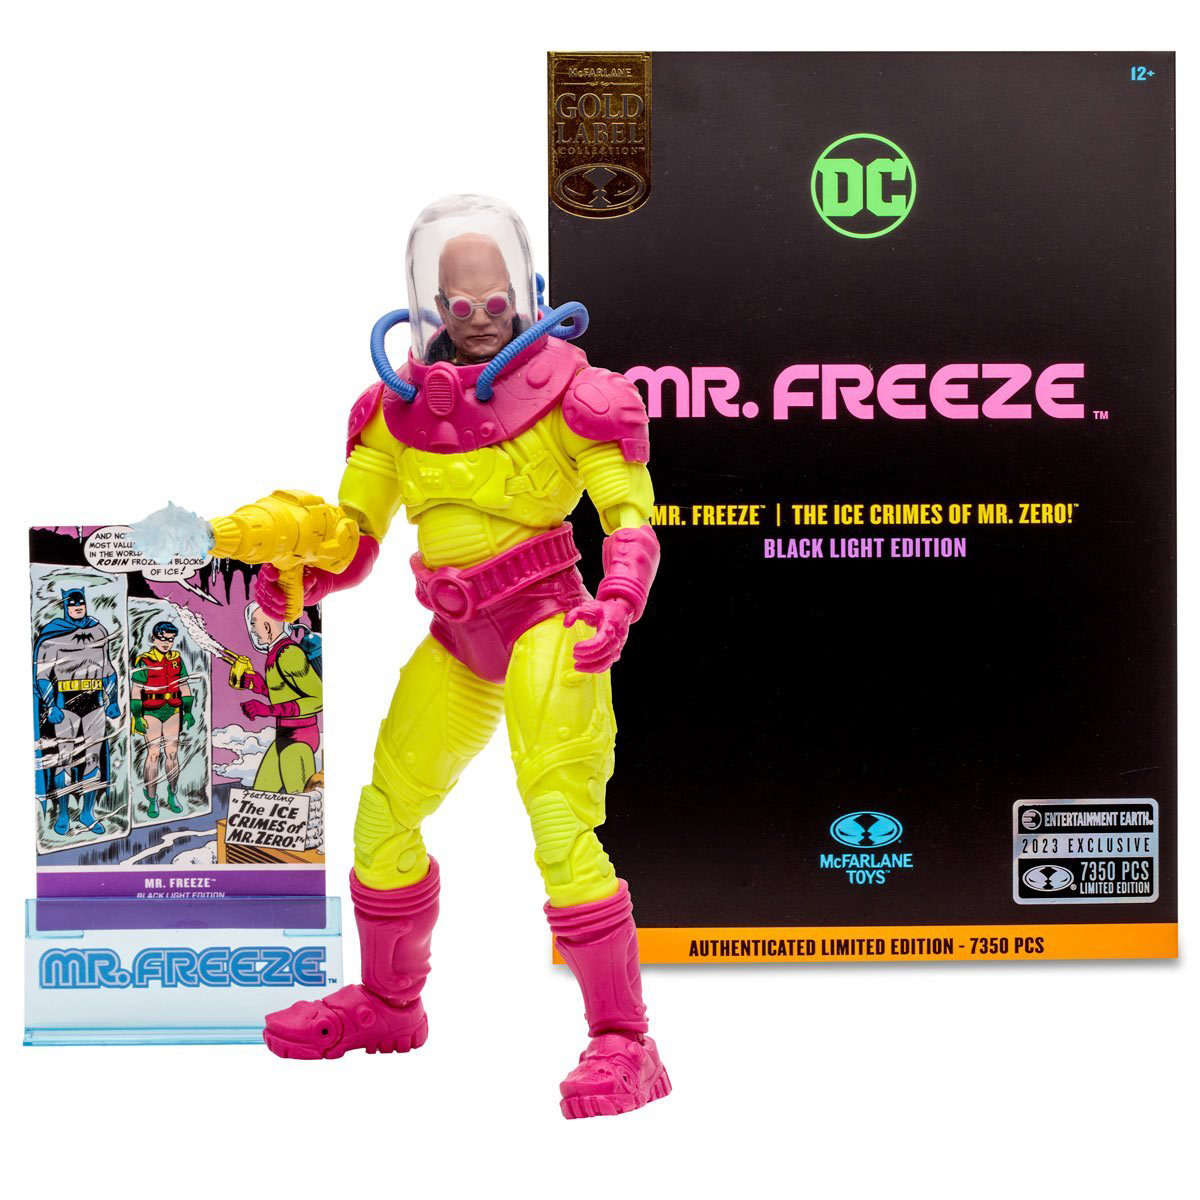 DC-Multiverse-Mr-Freeze-Black-Light-Gold-Label-Action-Figure-Entertainment-Earth-Exclusive-4